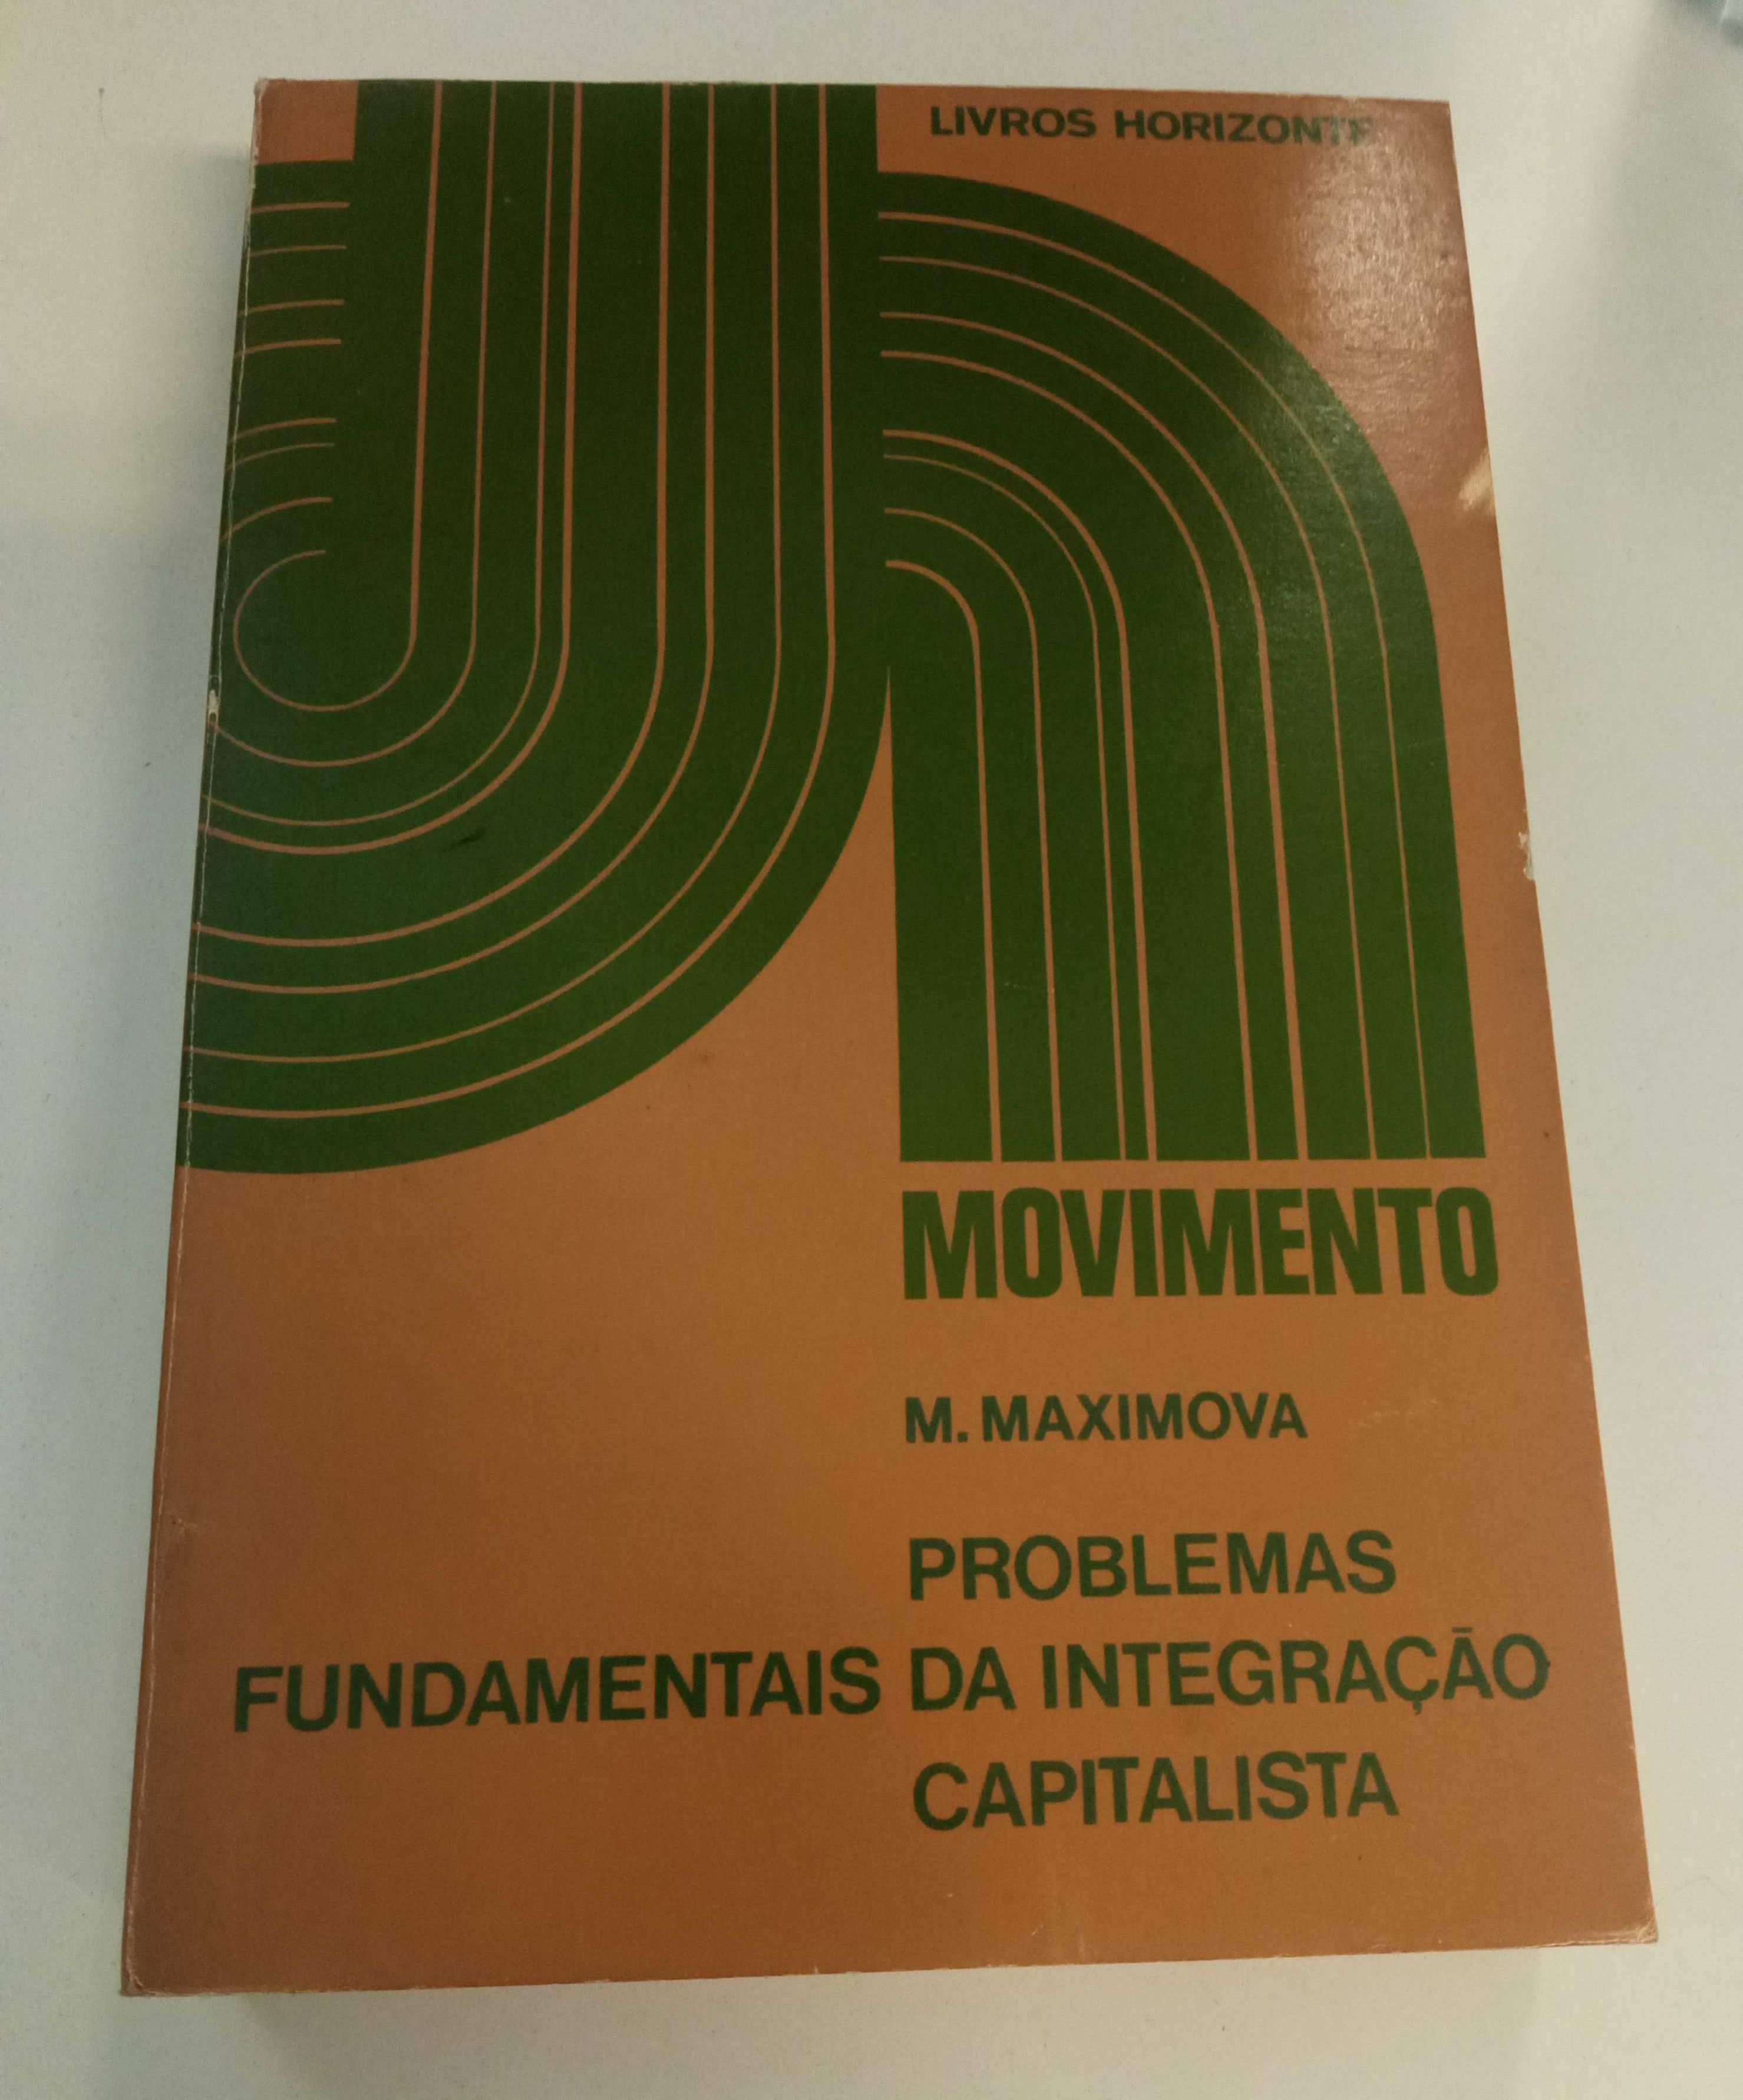 Problemas fundamentais da integração capitalista, de M. Maximova